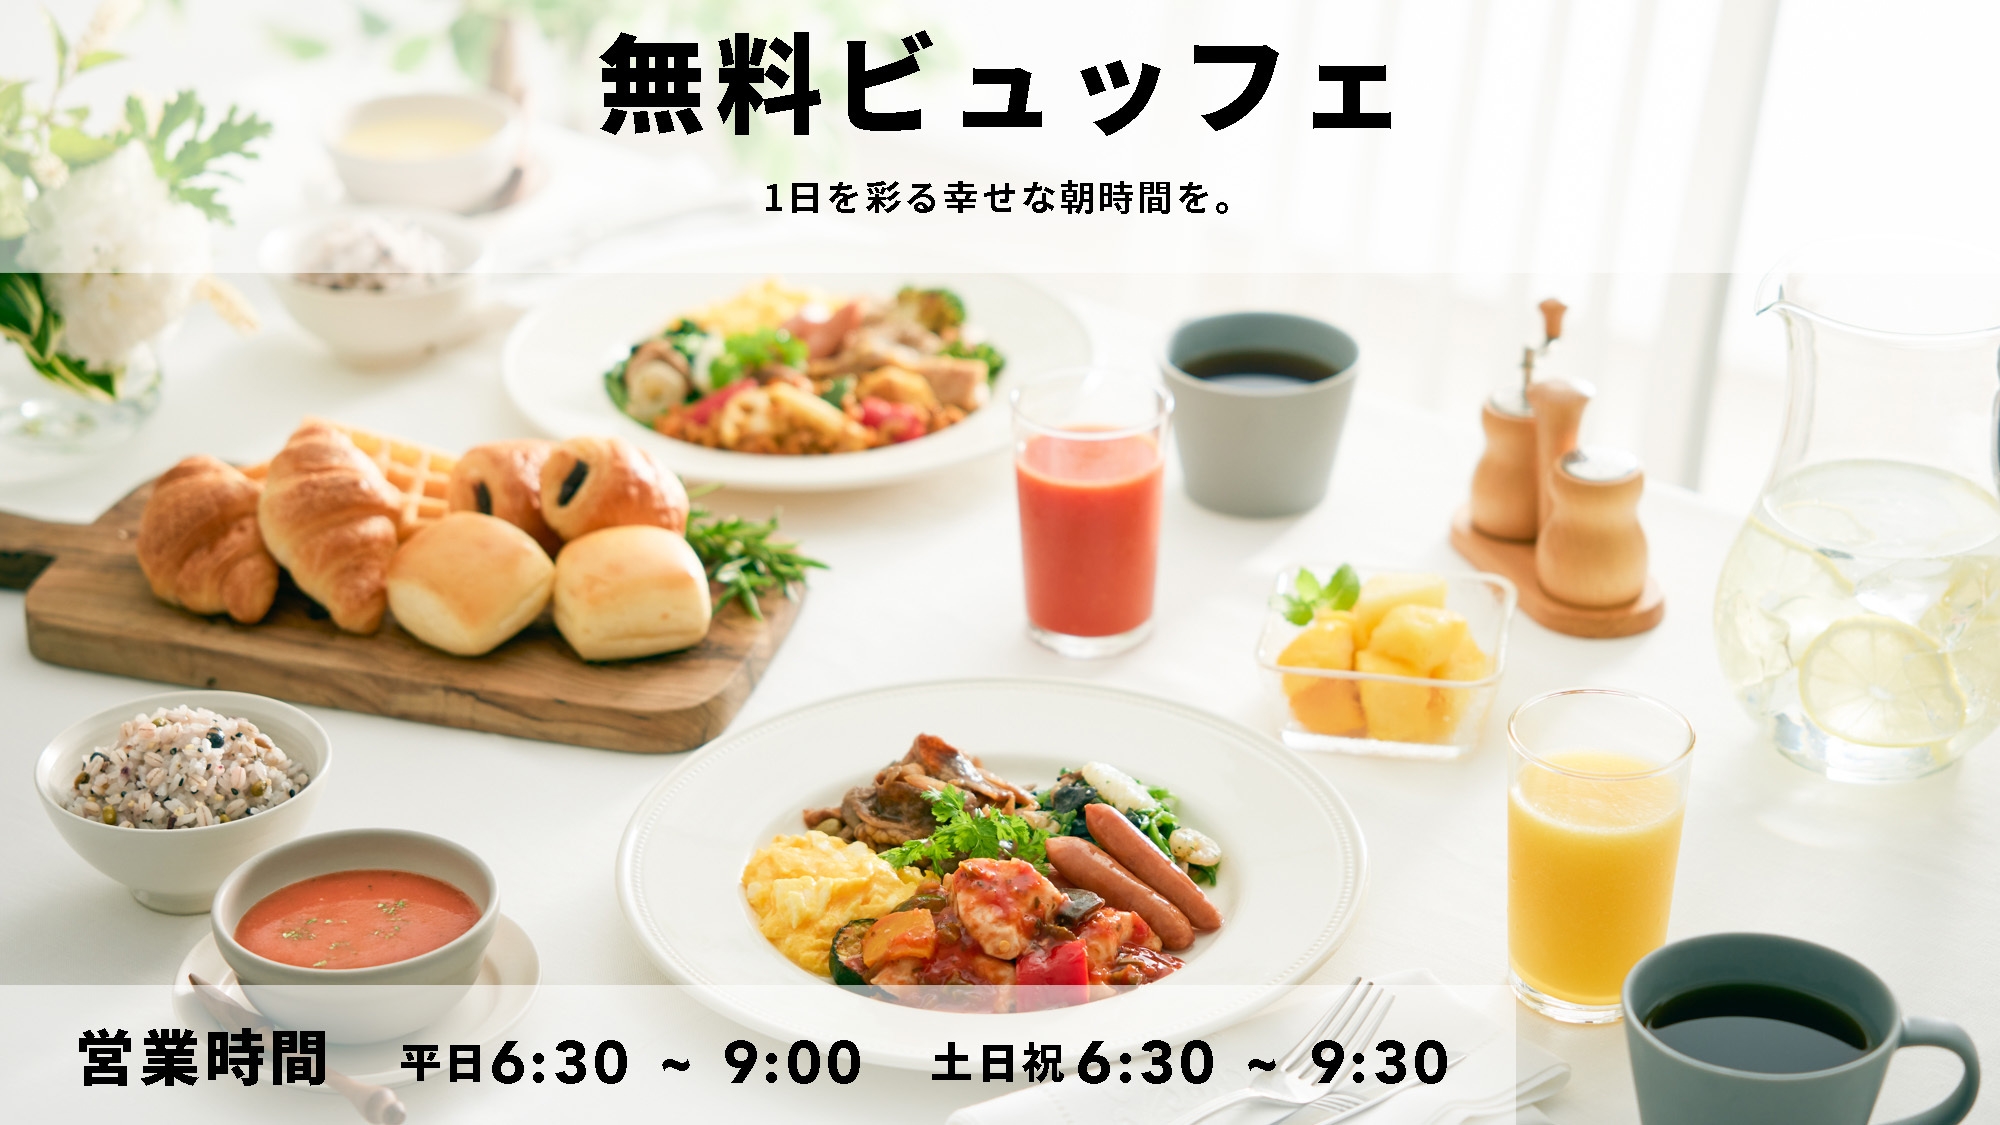 自由きままな Comfort stay ◆彩り豊かな朝食無料サービス◆